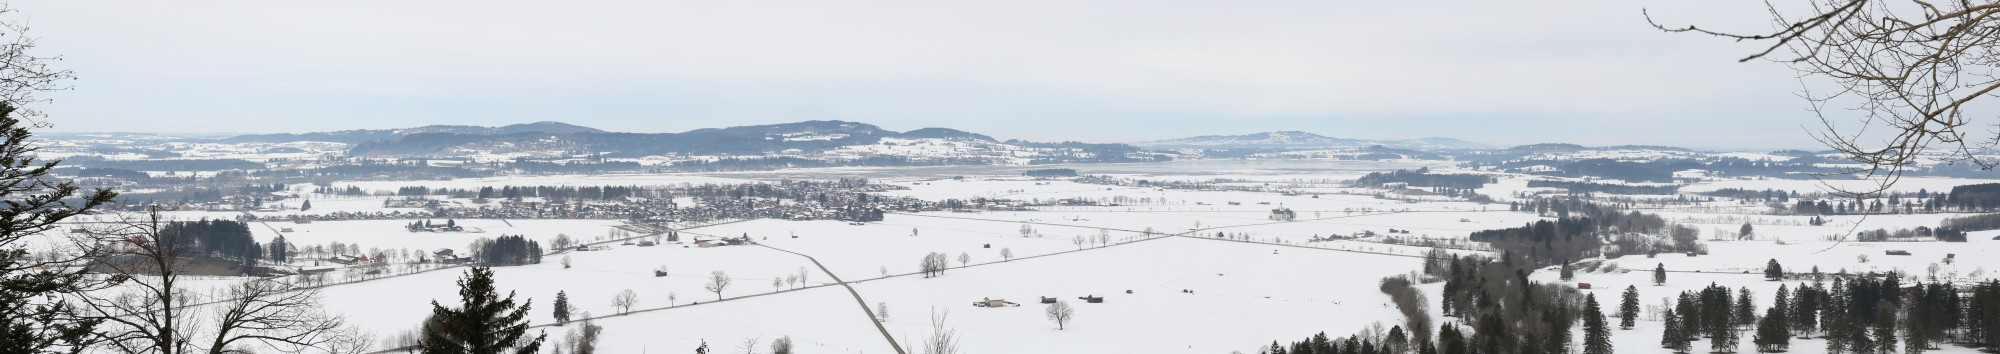 Vista de Schwangau desde Neuschwanstein, Alemania, 2015-02-15, DD 39-43 PAN